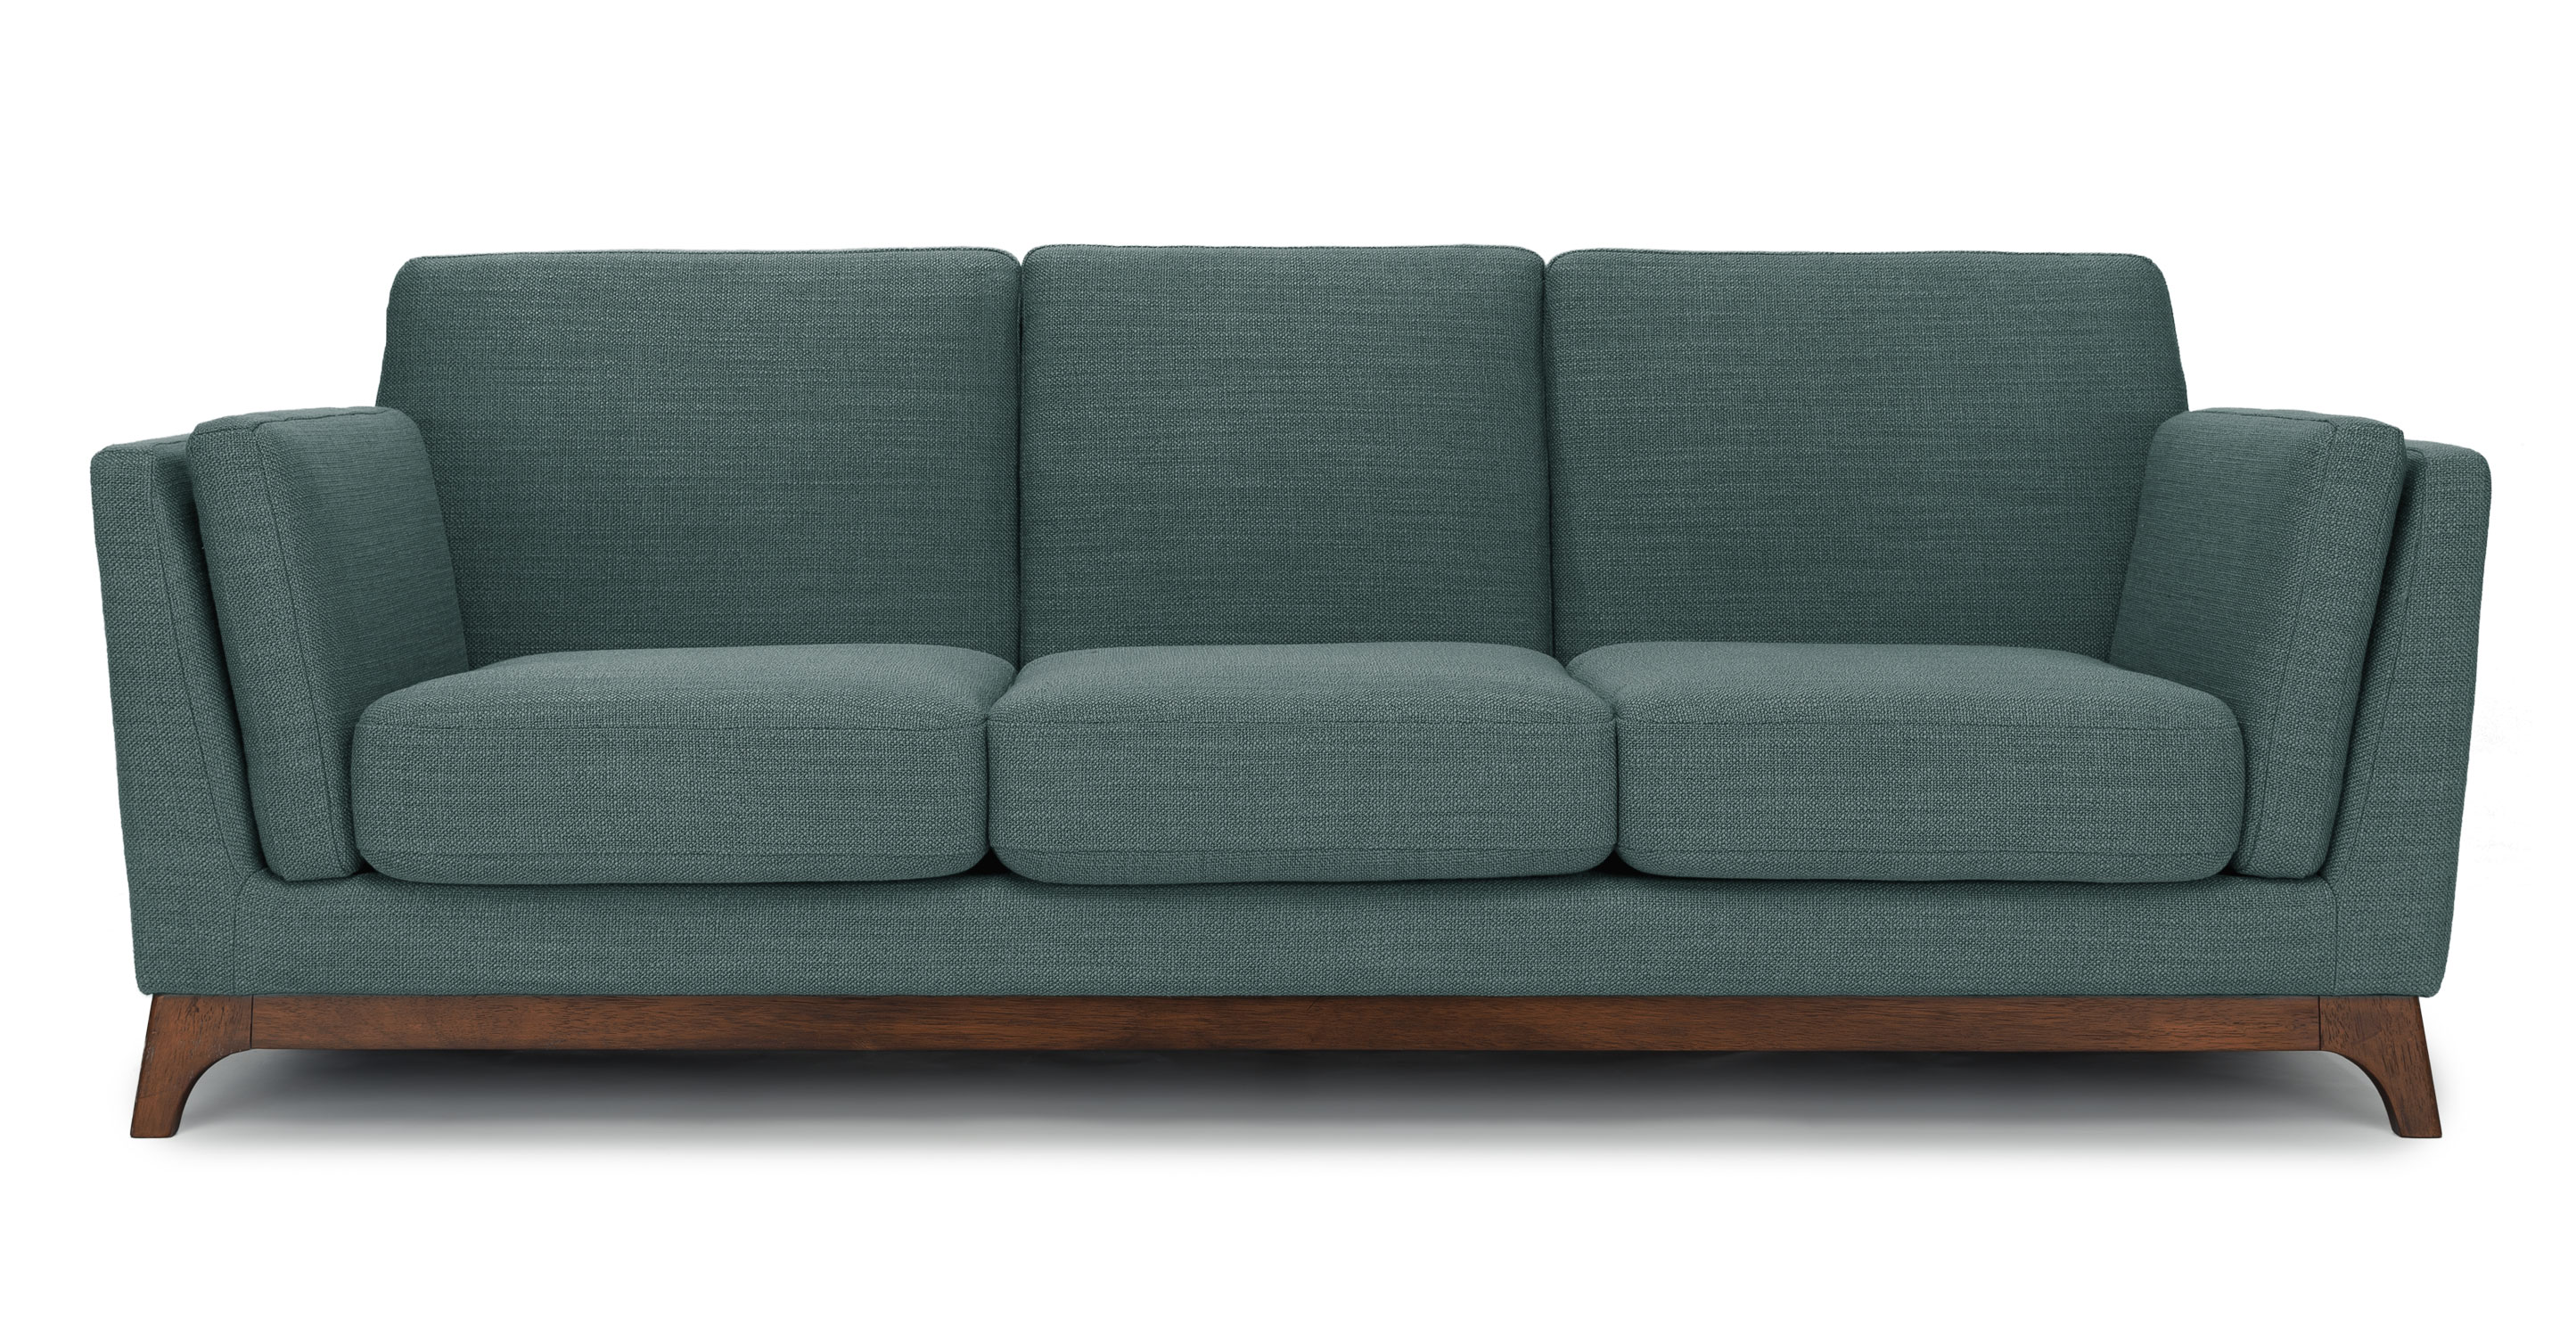 Aquarius Aqua Ceni 3 Seater Fabric Sofa | Article